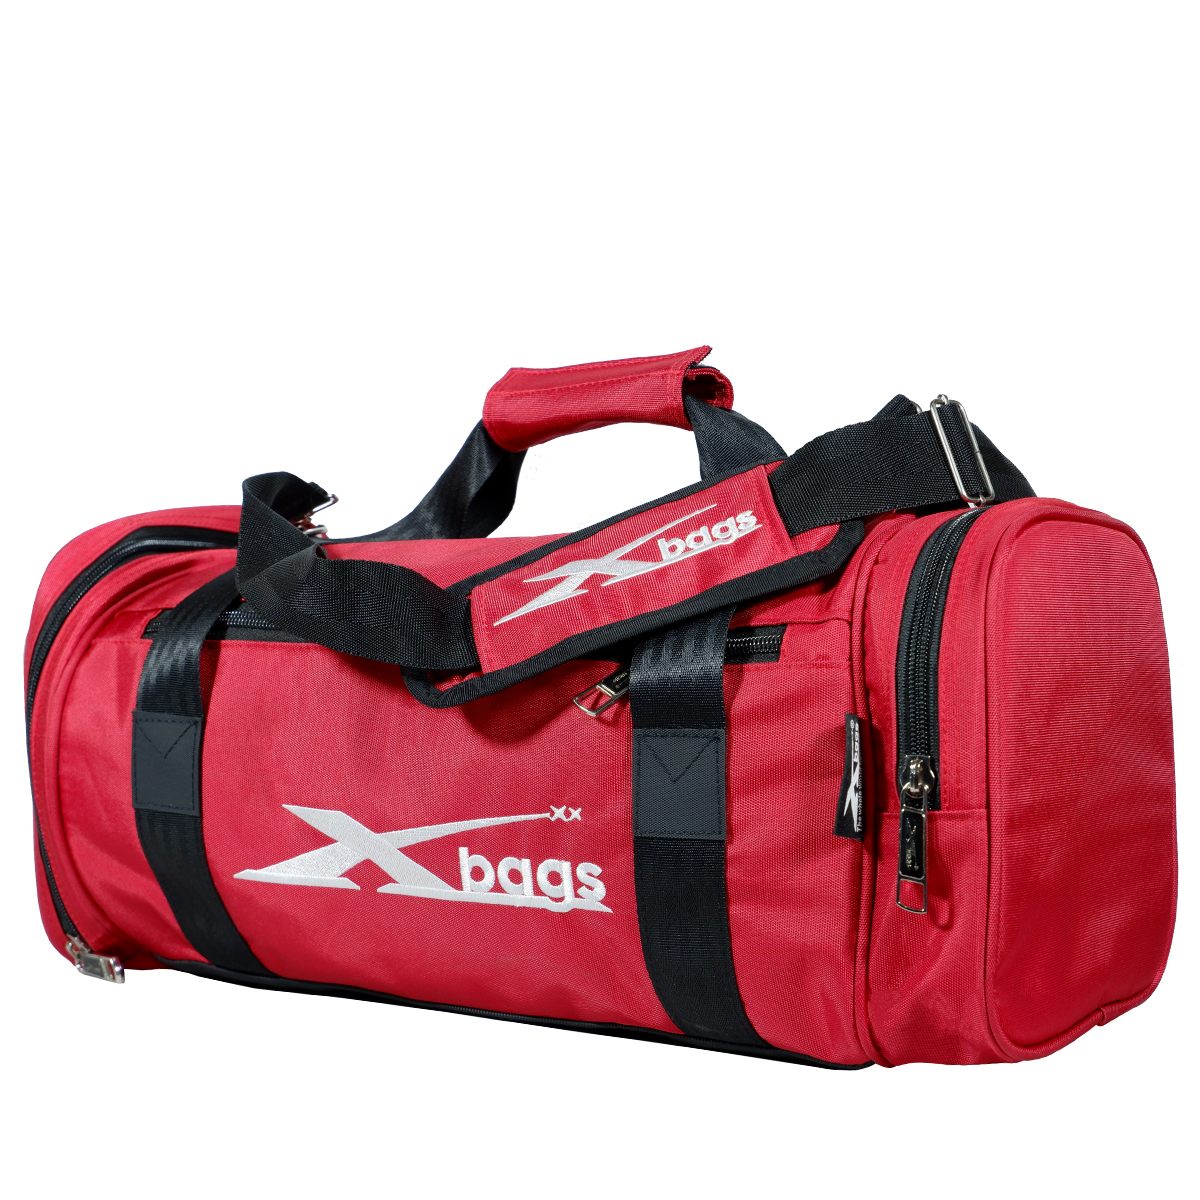 Túi trống thể thao XBAGS Xb 6002 túi du lịch có ngăn đựng giày